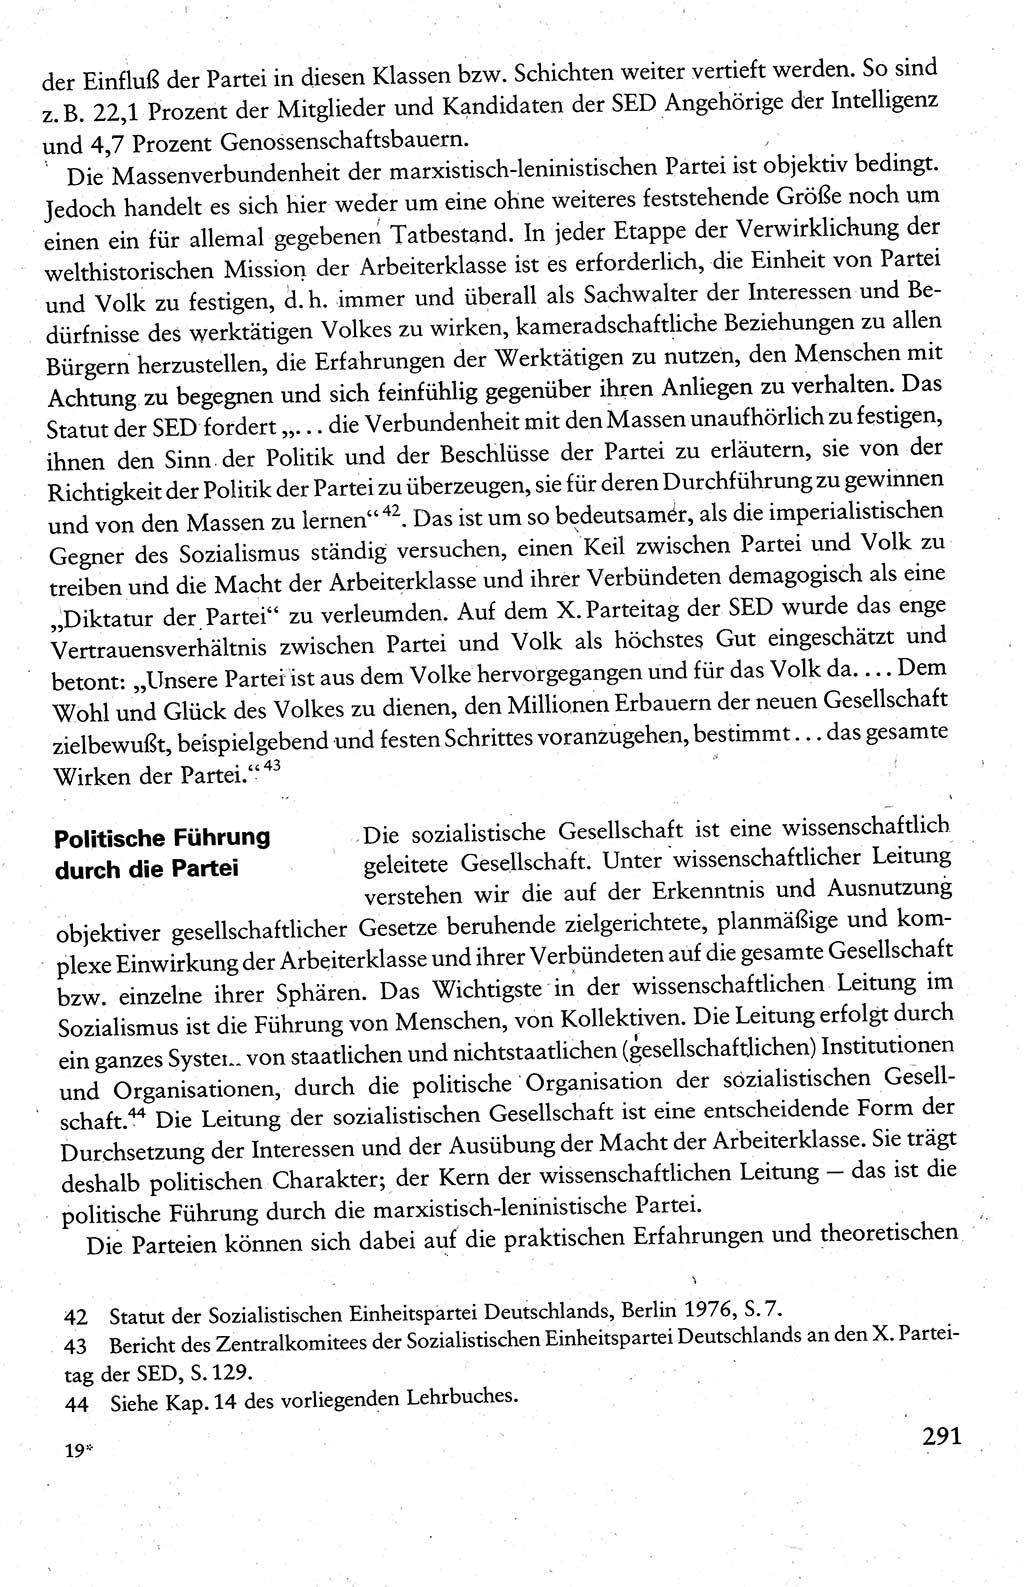 Wissenschaftlicher Kommunismus [Deutsche Demokratische Republik (DDR)], Lehrbuch für das marxistisch-leninistische Grundlagenstudium 1983, Seite 291 (Wiss. Komm. DDR Lb. 1983, S. 291)